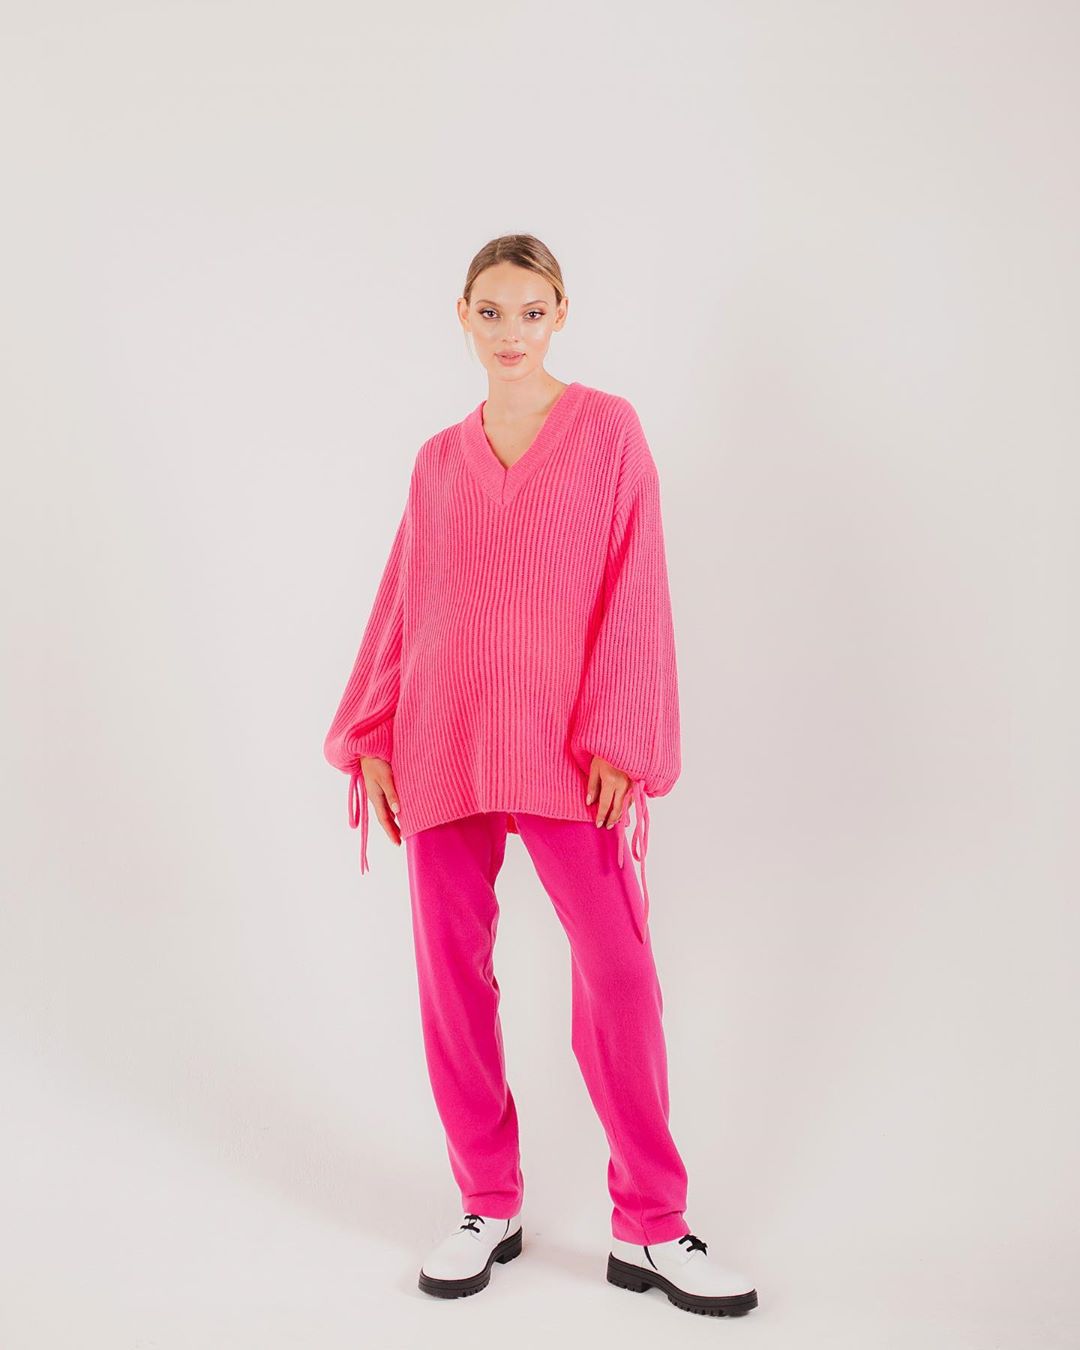 ОДЕЖДА ДЛЯ ДЕТЕЙ И МАМ - Этот розовый Look от итальянского бренда MSGM переместит вас в центр внимания в два счёта. Мода и то самое «чудесное» положение совместимы! Повышайте свое настроение одеждой...